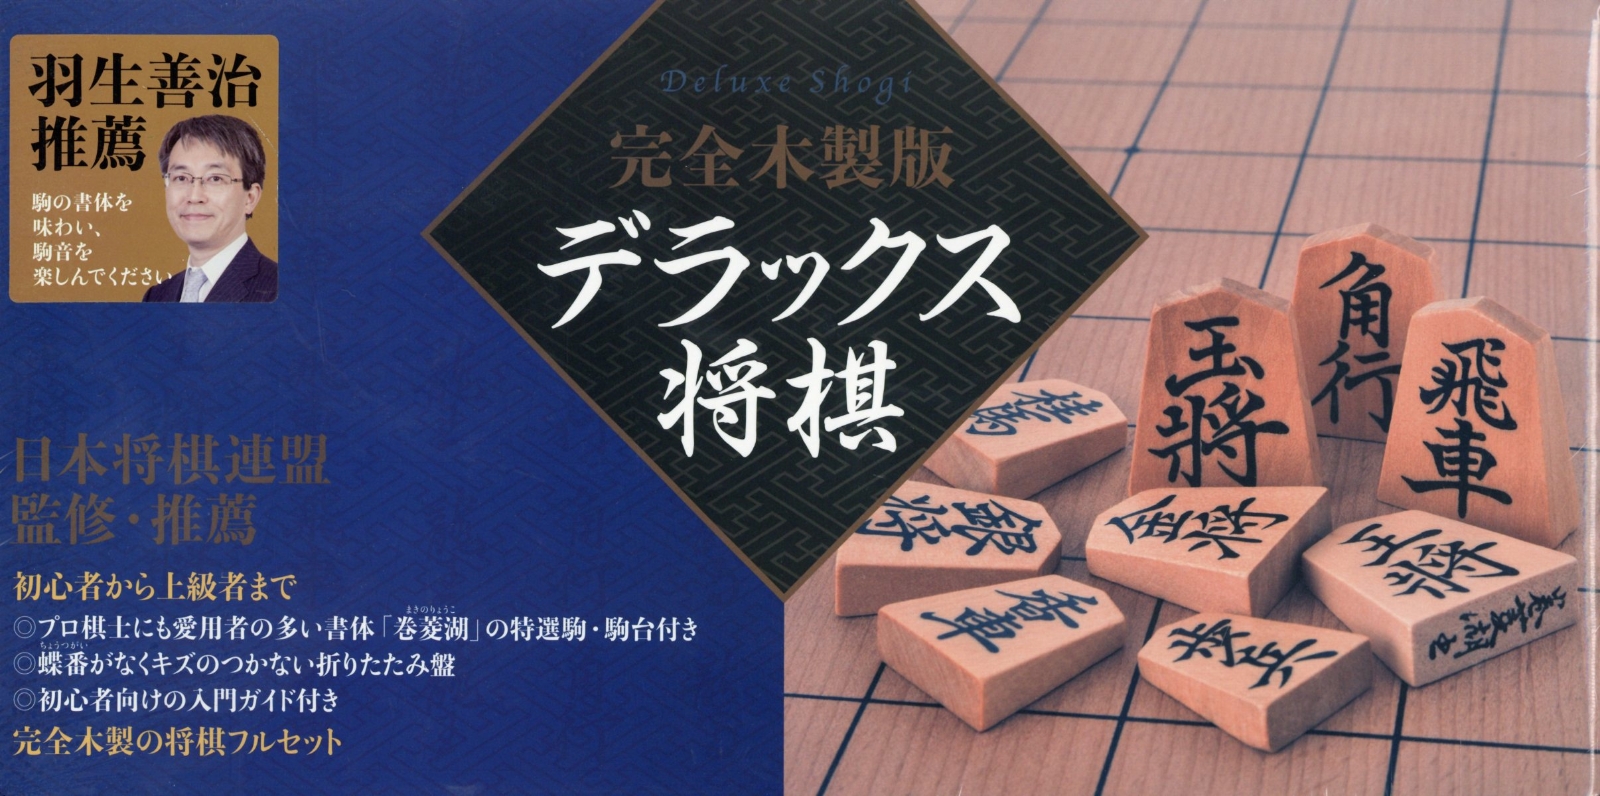 楽天ブックス: 完全木製版デラックス将棋 - 日本将棋連盟 